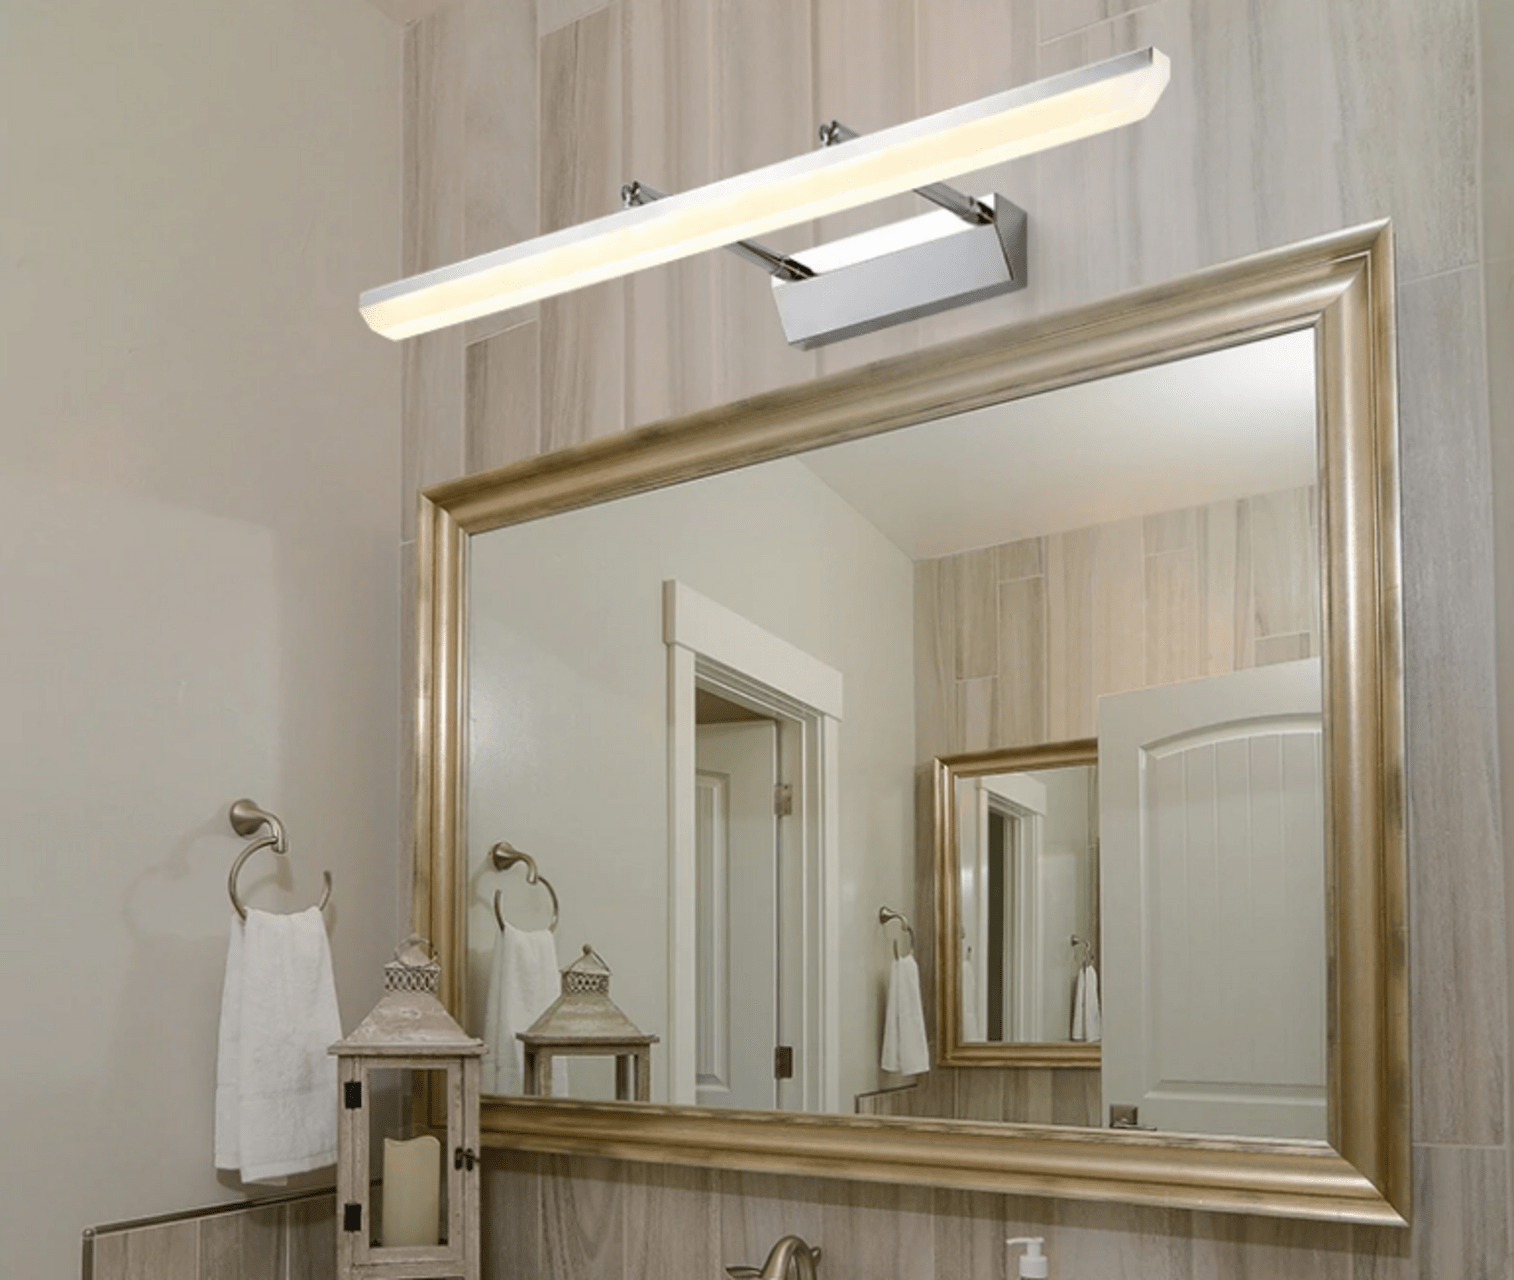 Виды подсветки для зеркала в ванной, варианты установки и подключения 15 - ДиванеТТо